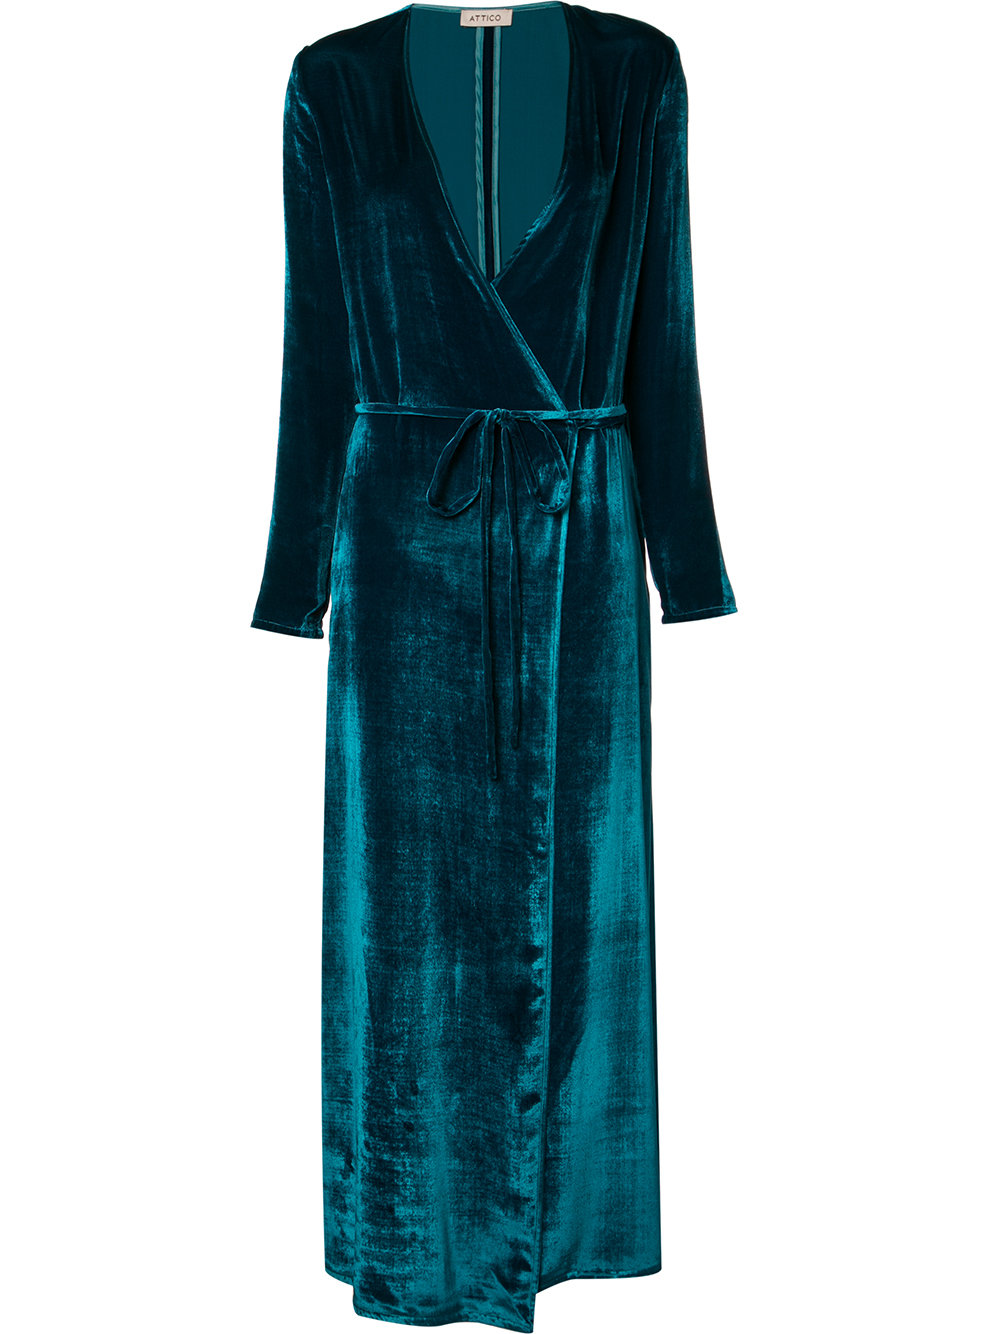 ATTICO tied V-neck maxi dress, 71 309 ₽ (-10% на первый заказ | f10off)